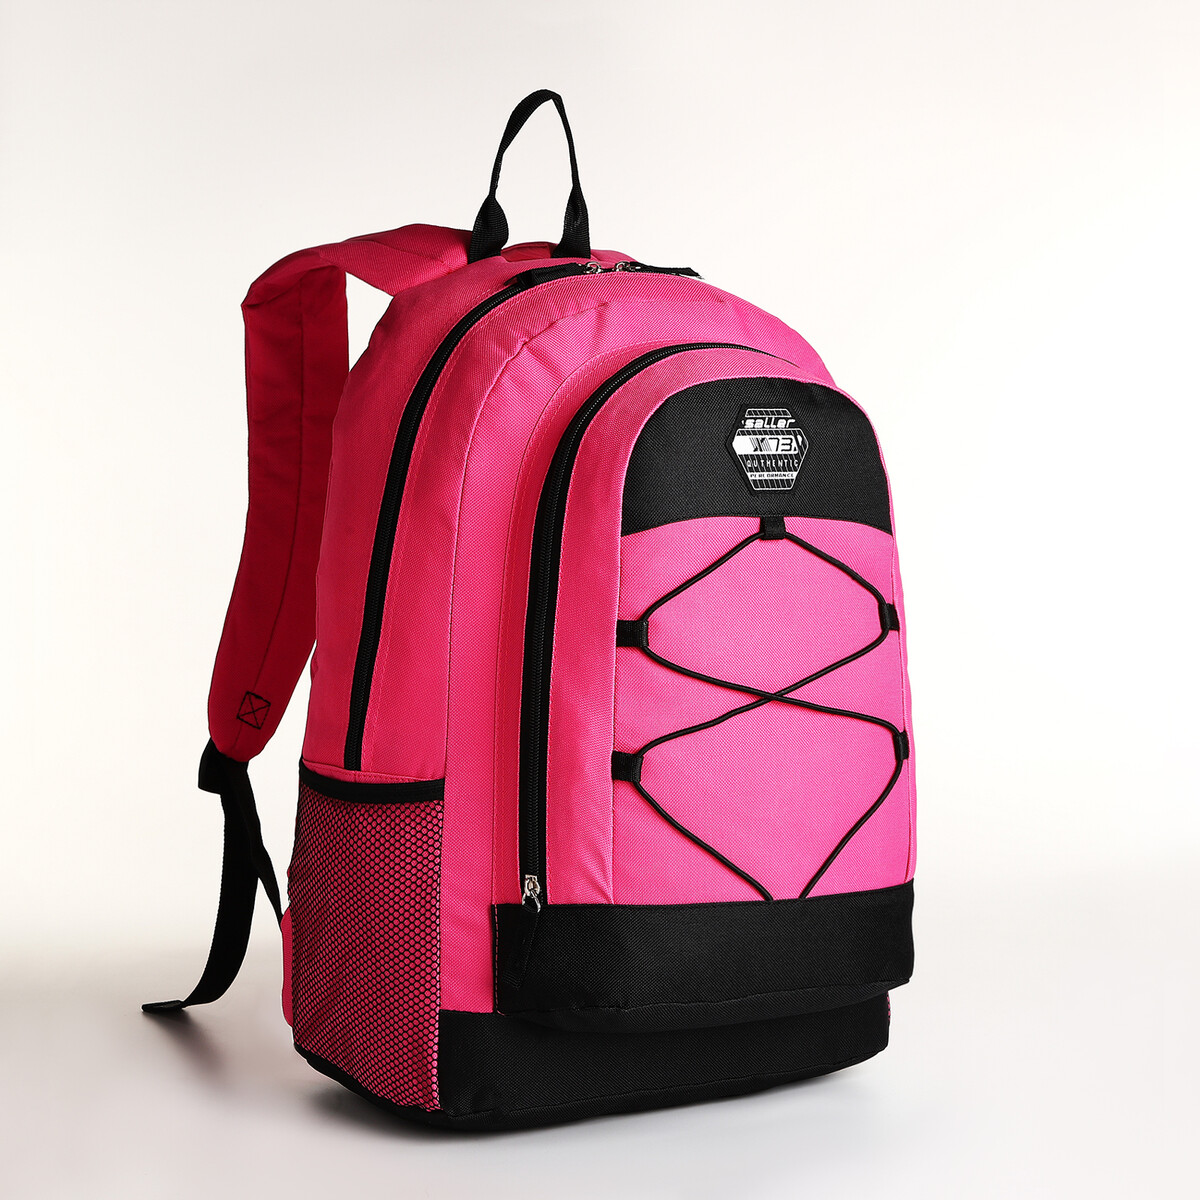 Рюкзак молодежный на молнии, 3 кармана, цвет розовый рюкзак молодежный водонепроницаемый на молнии 3 кармана голубой розовый